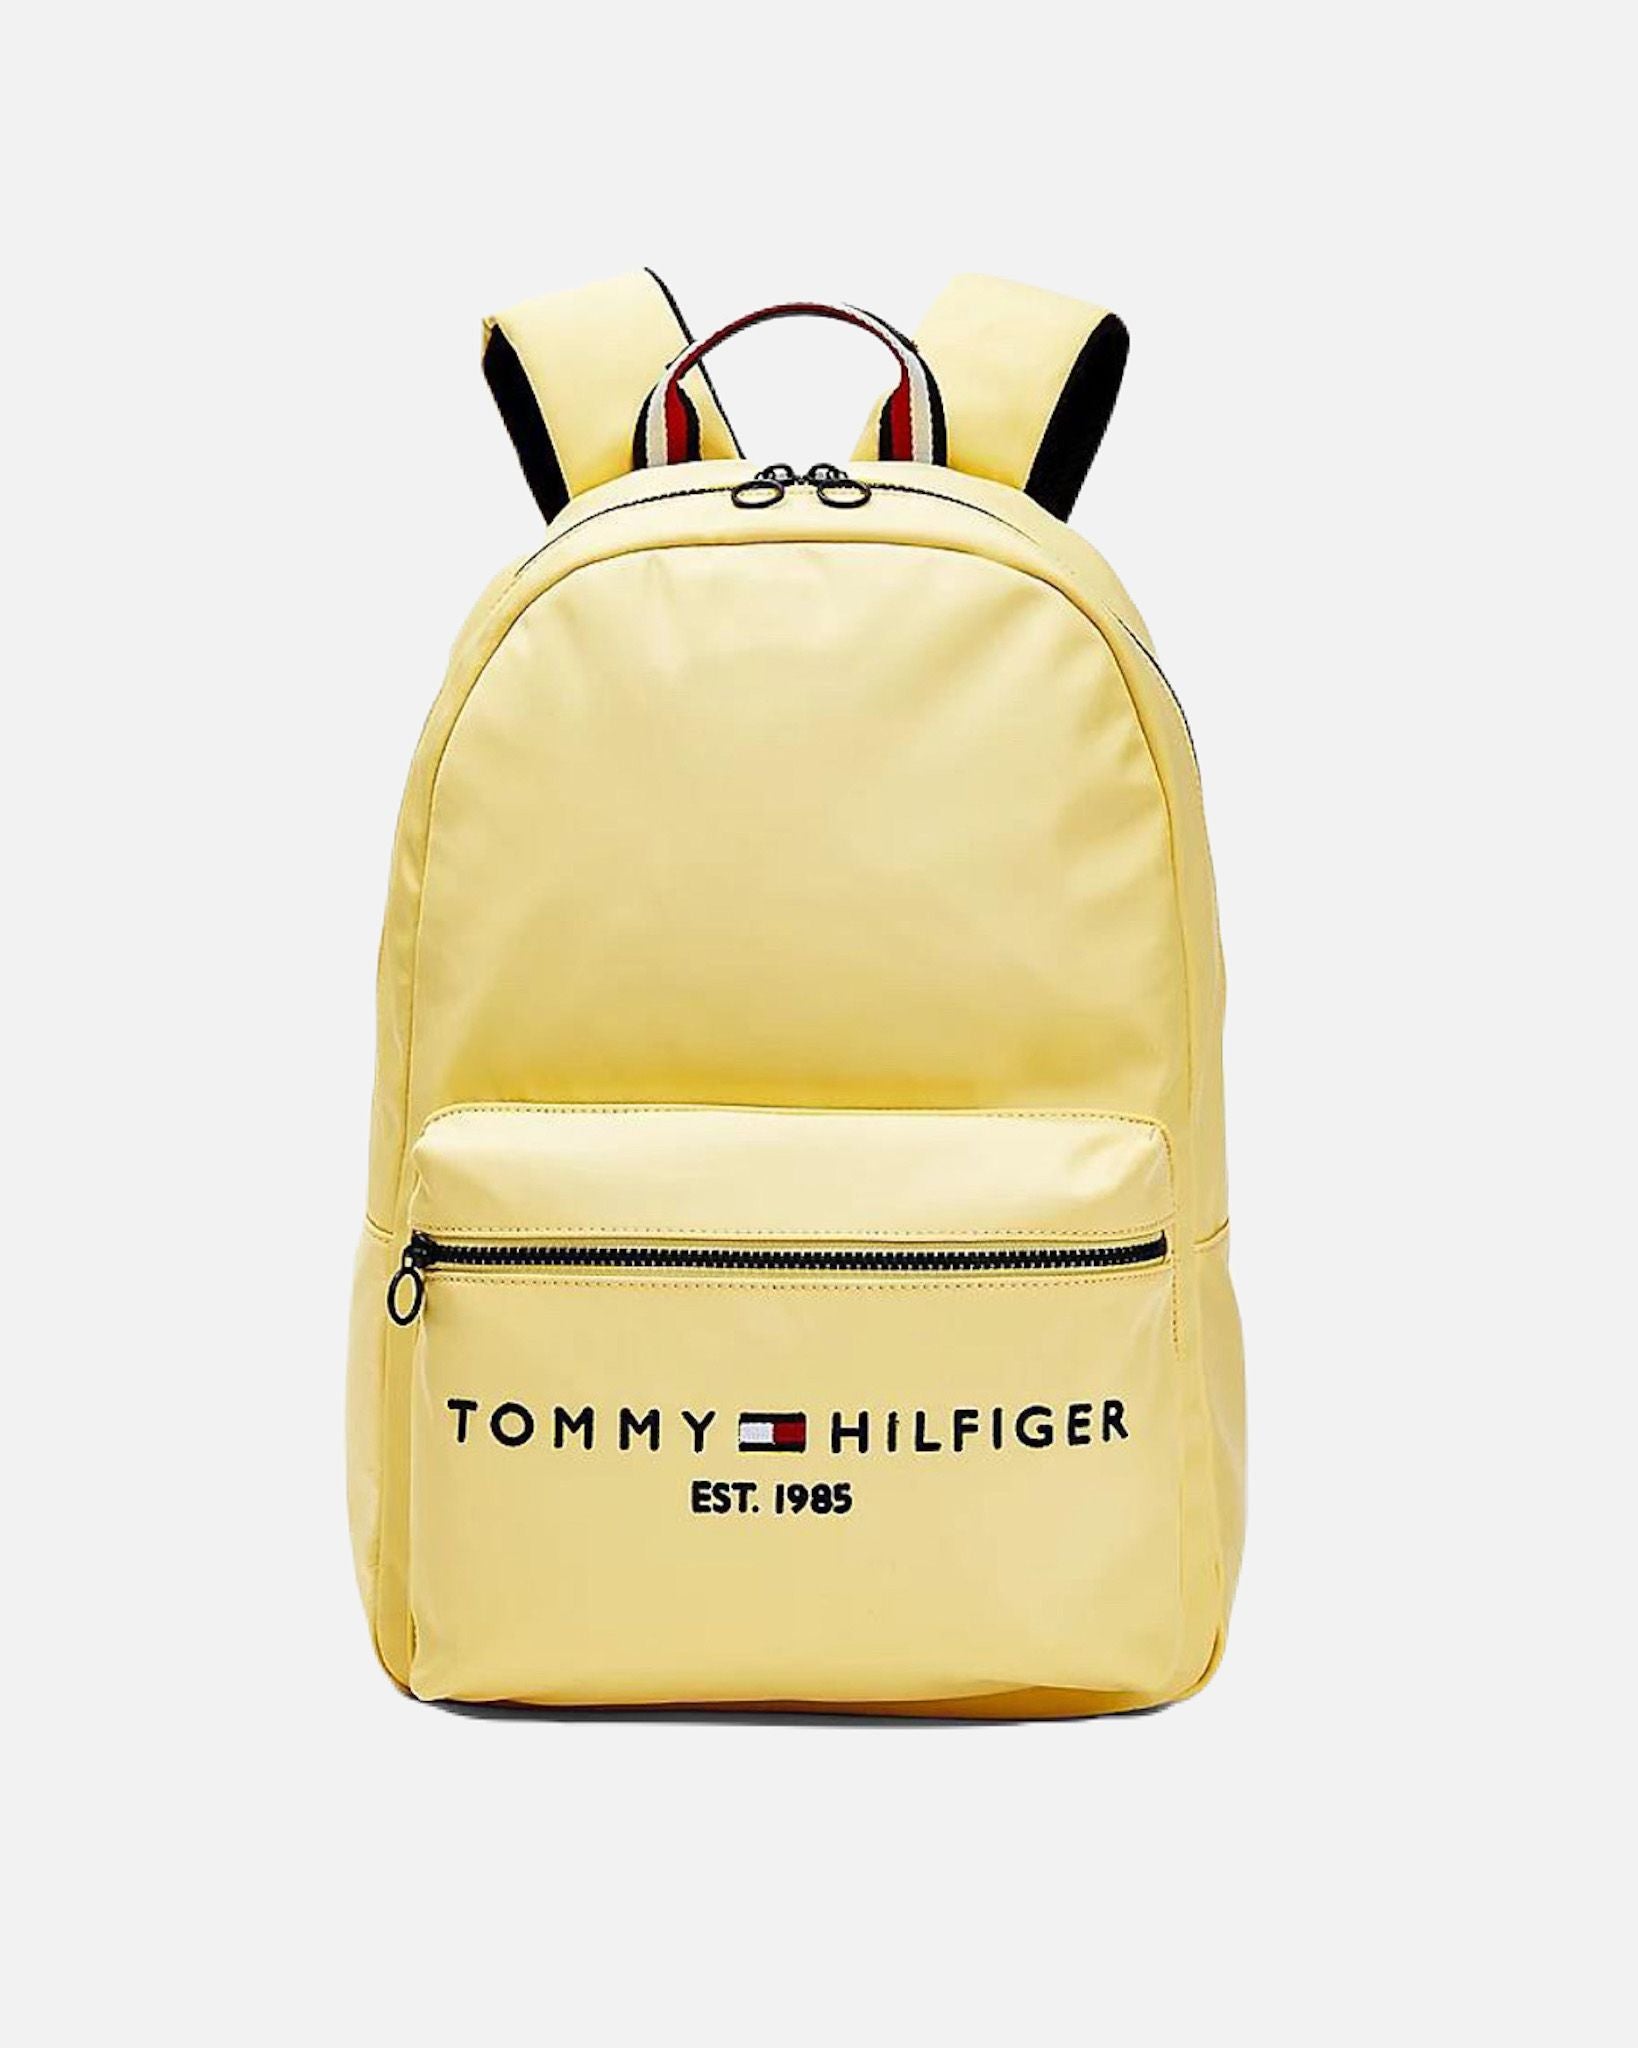 TOMMY HILFIGER-BAG